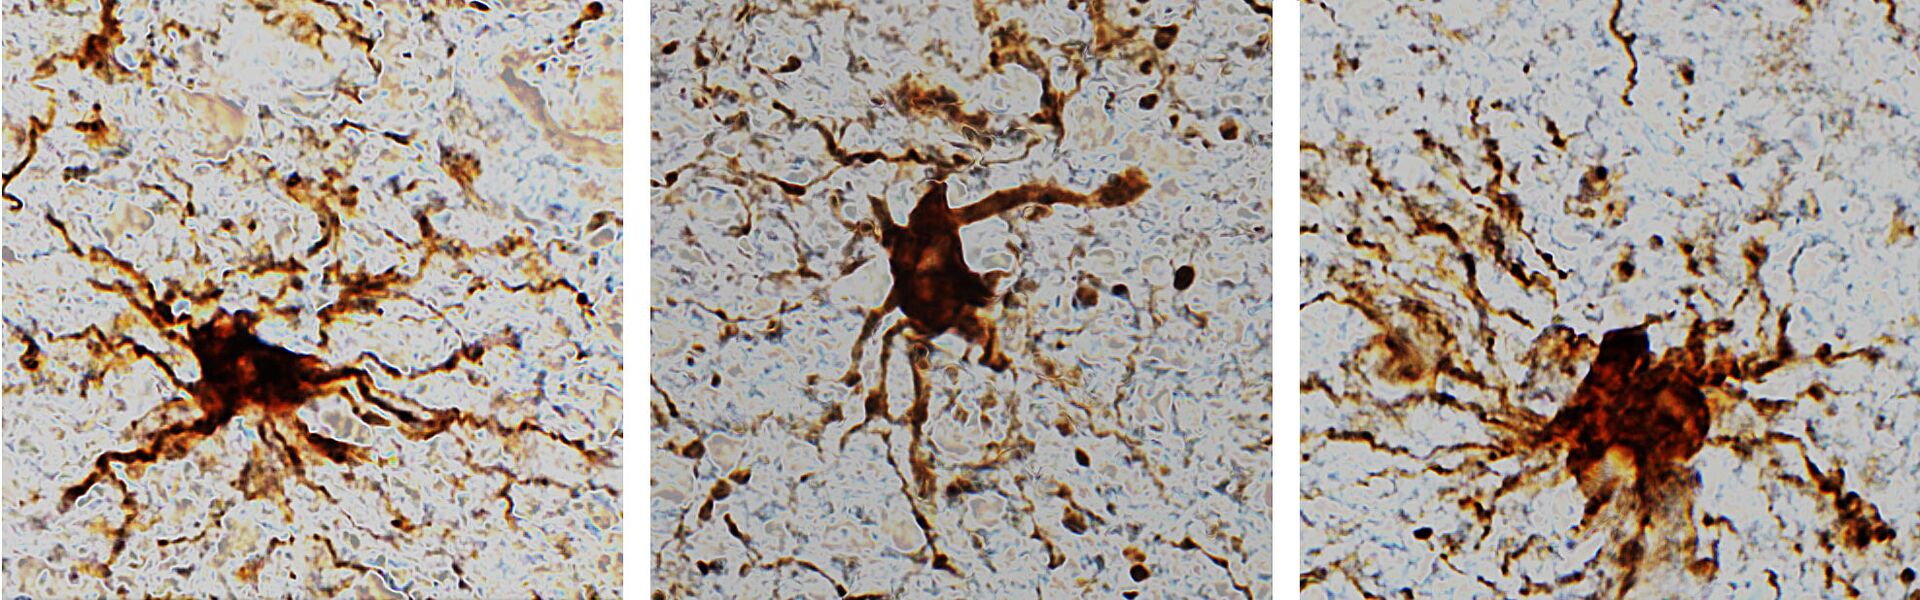 Descobertas no cérebro 'células zumbis' que aumentam sua atividade após morte (FOTO) - Sputnik Brasil, 1920, 24.03.2021